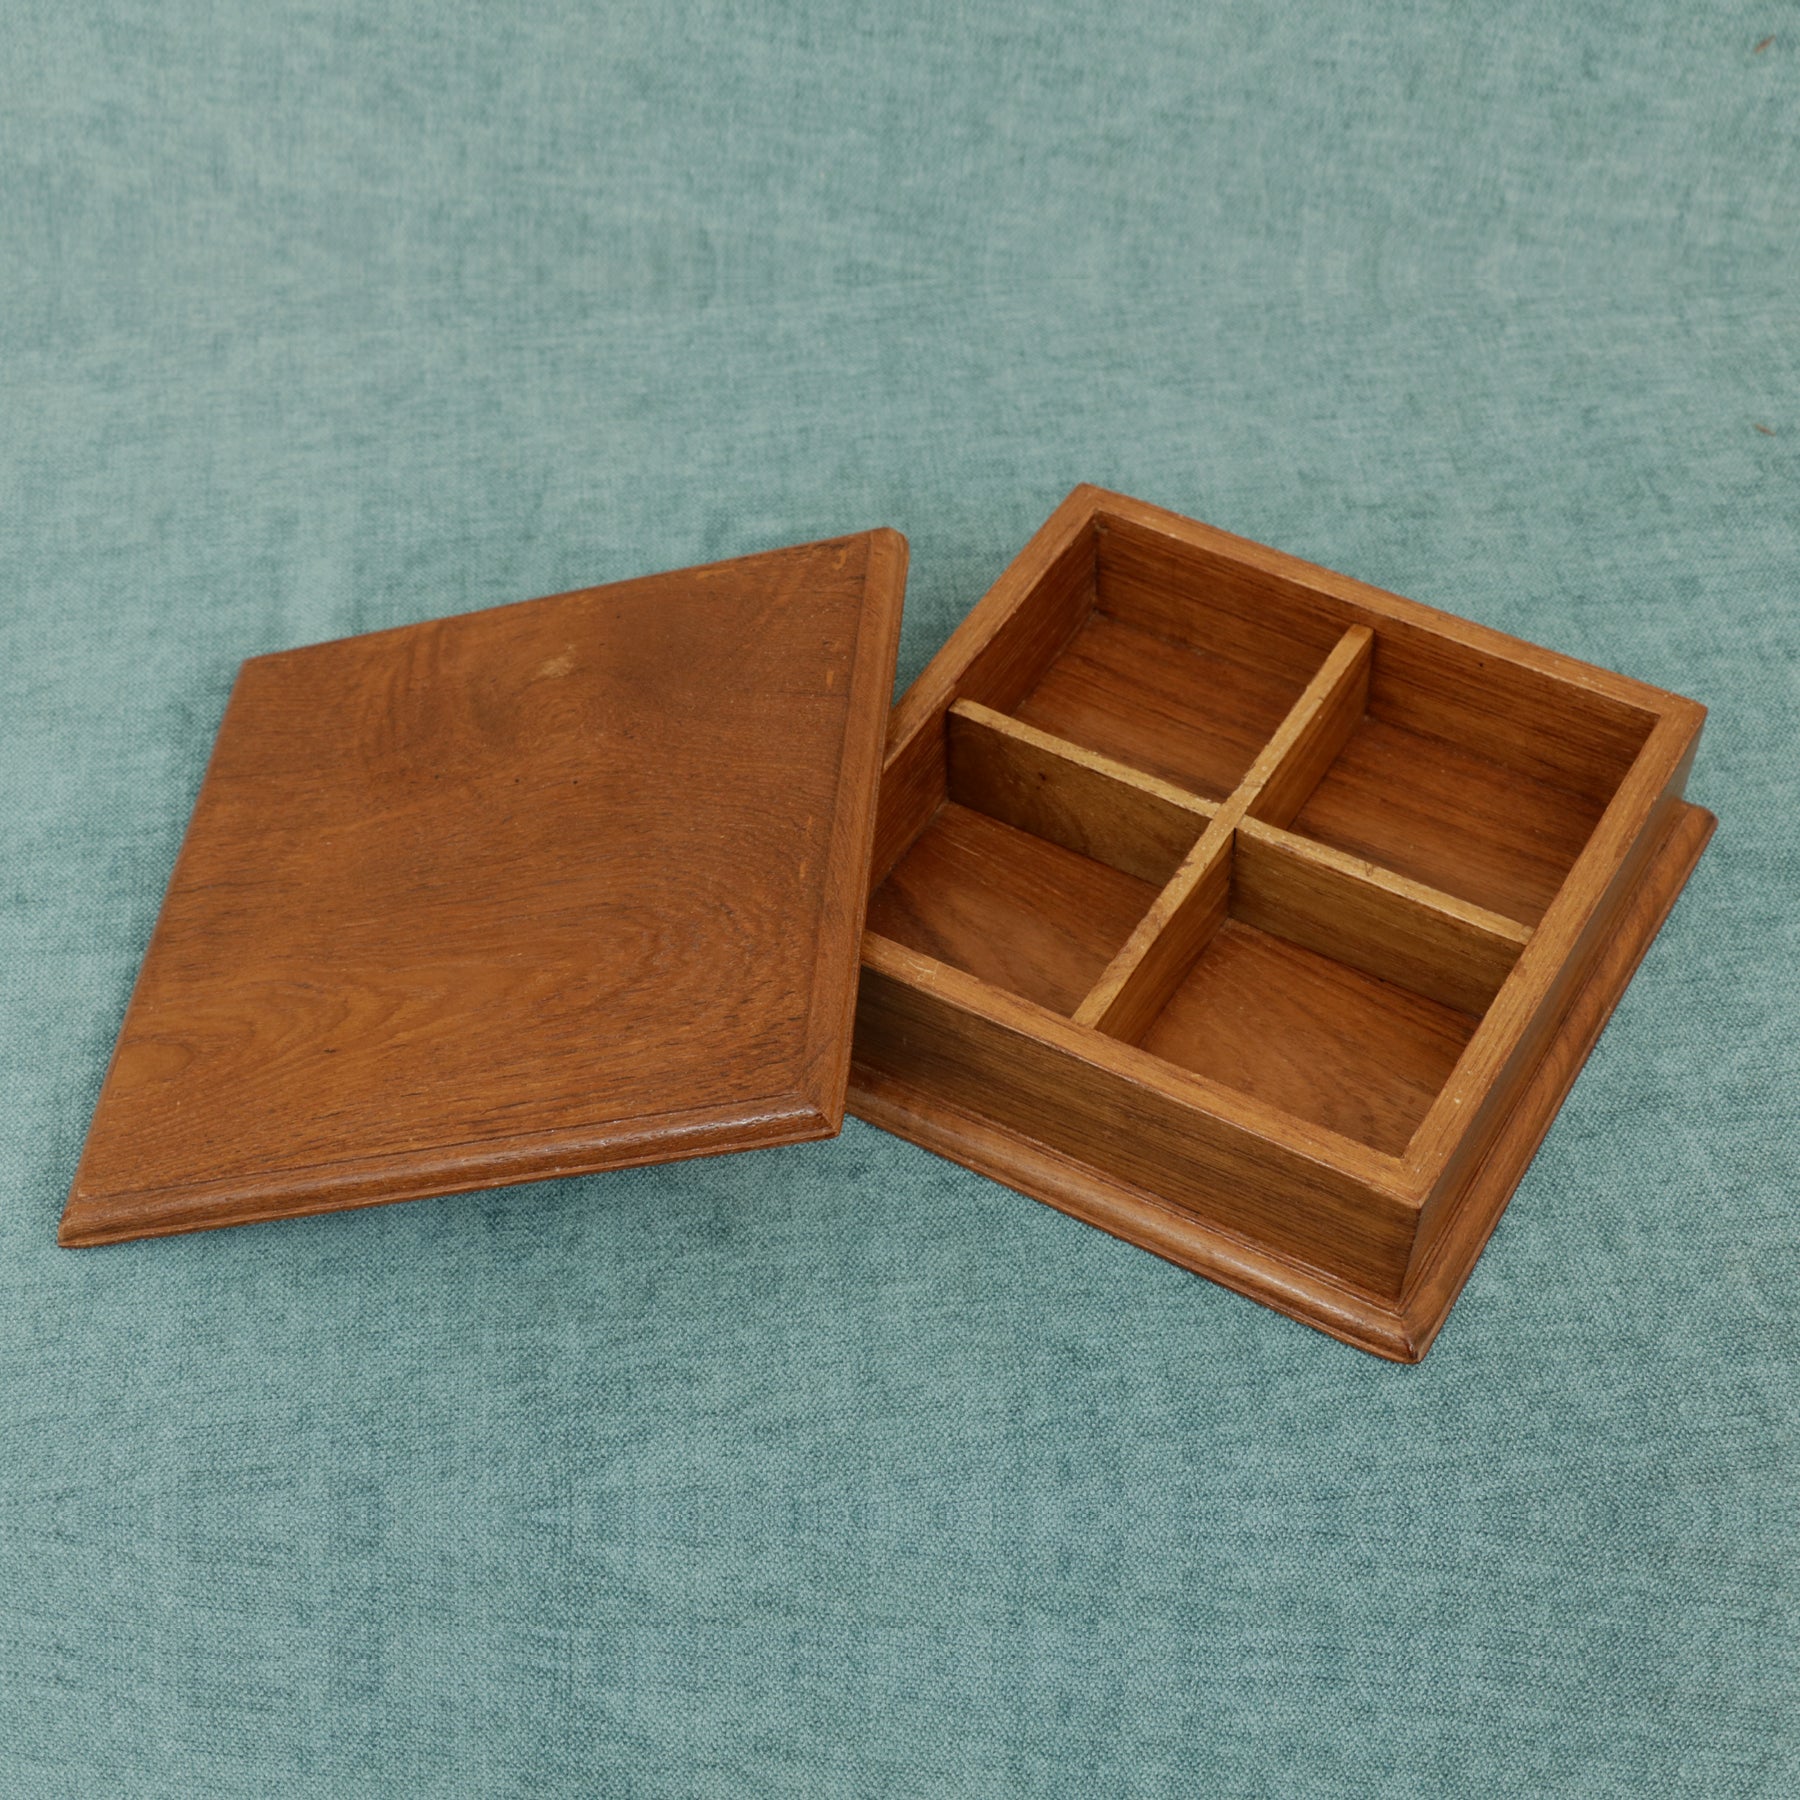 Four Compartment Square Box Wooden Box